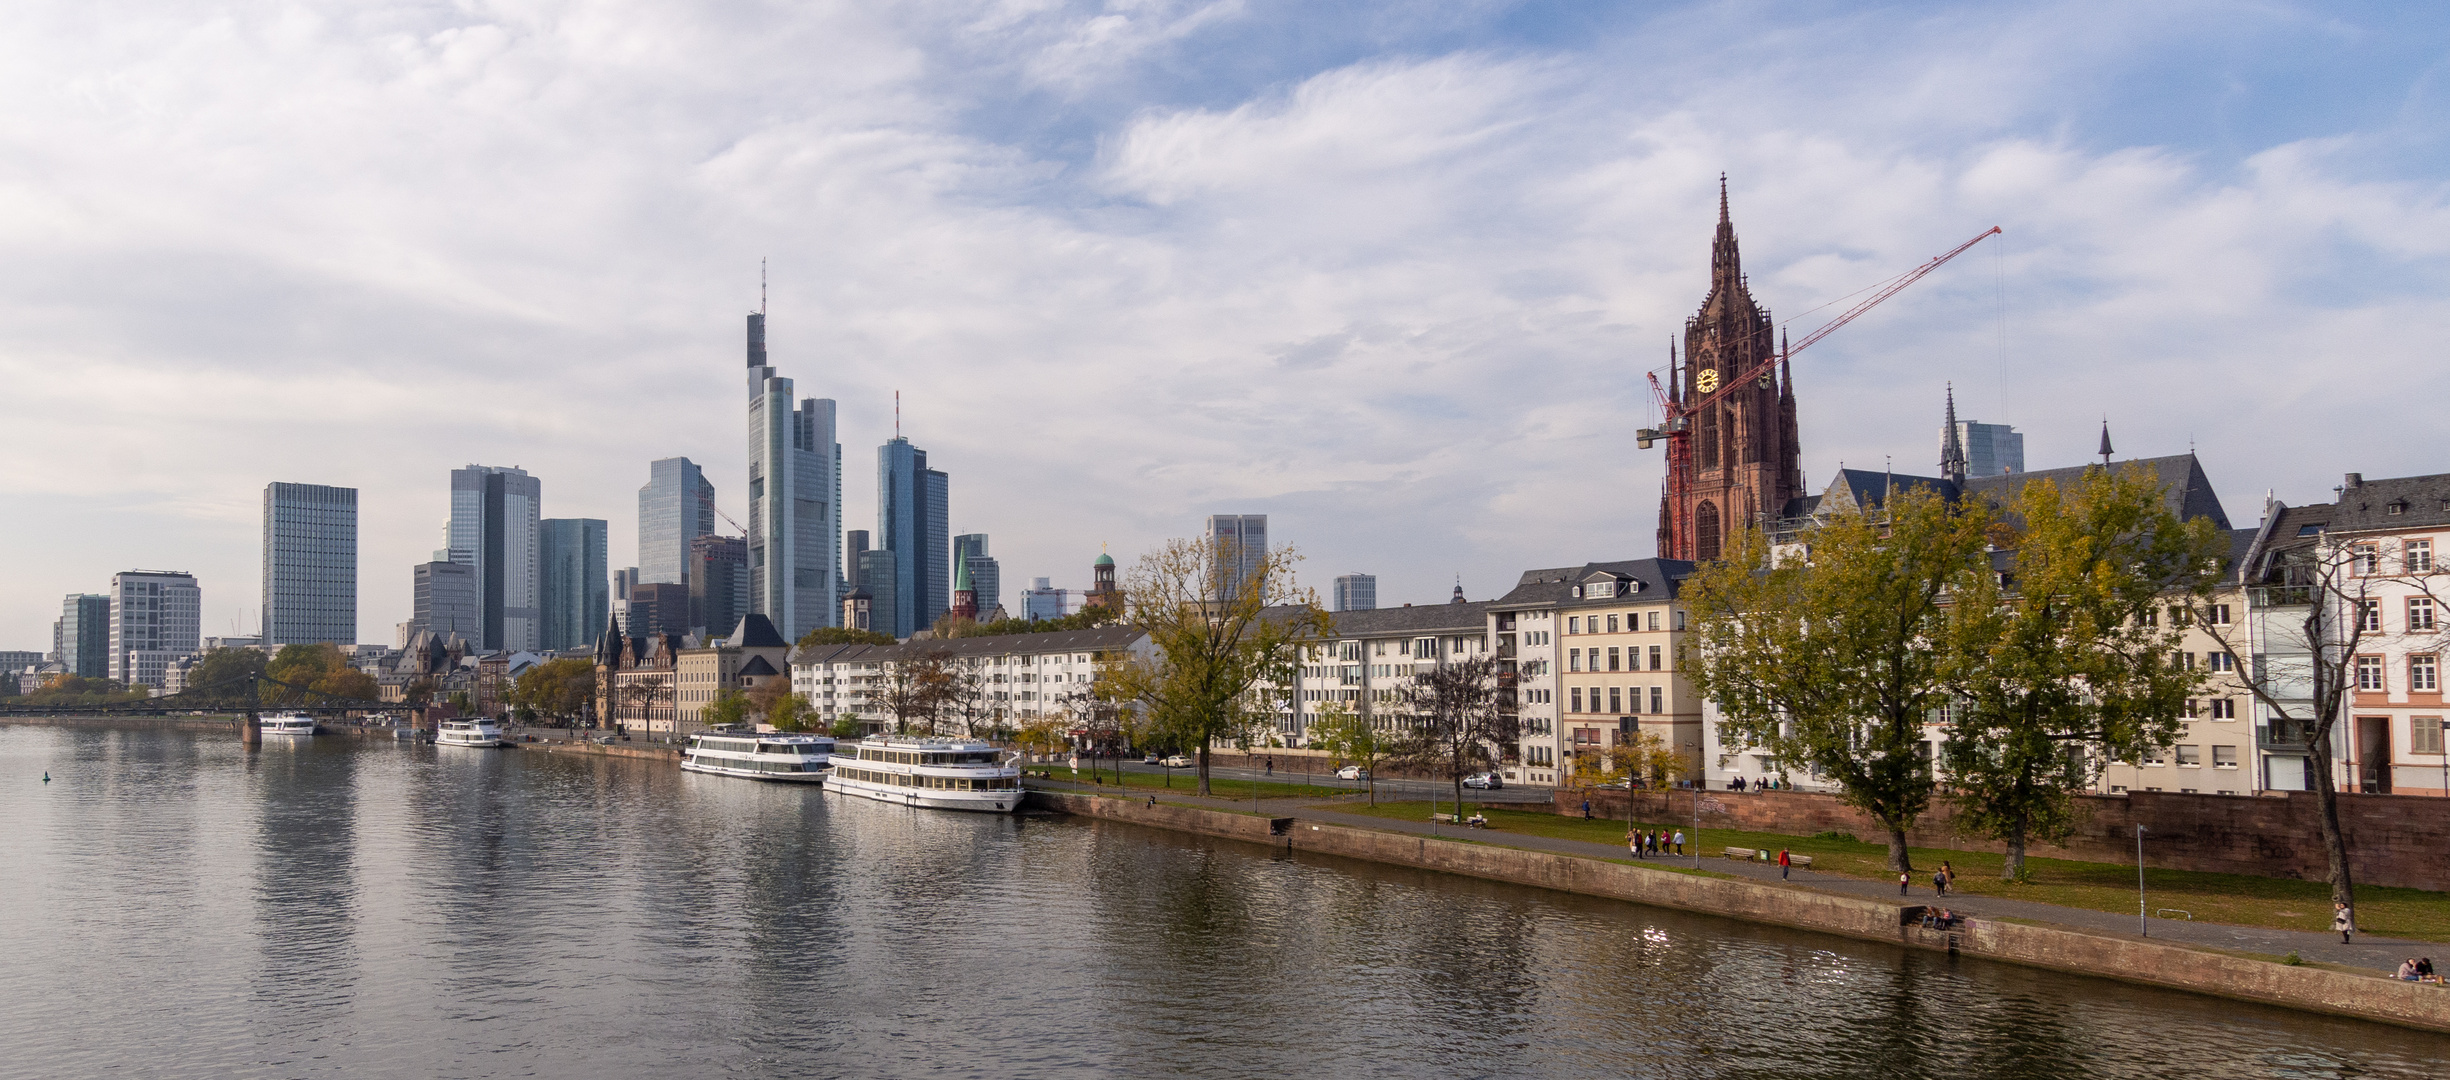 Frankfurt - View from Alte Brücke on Main River, Bahnhofsviertel and Kaiserdom - 01